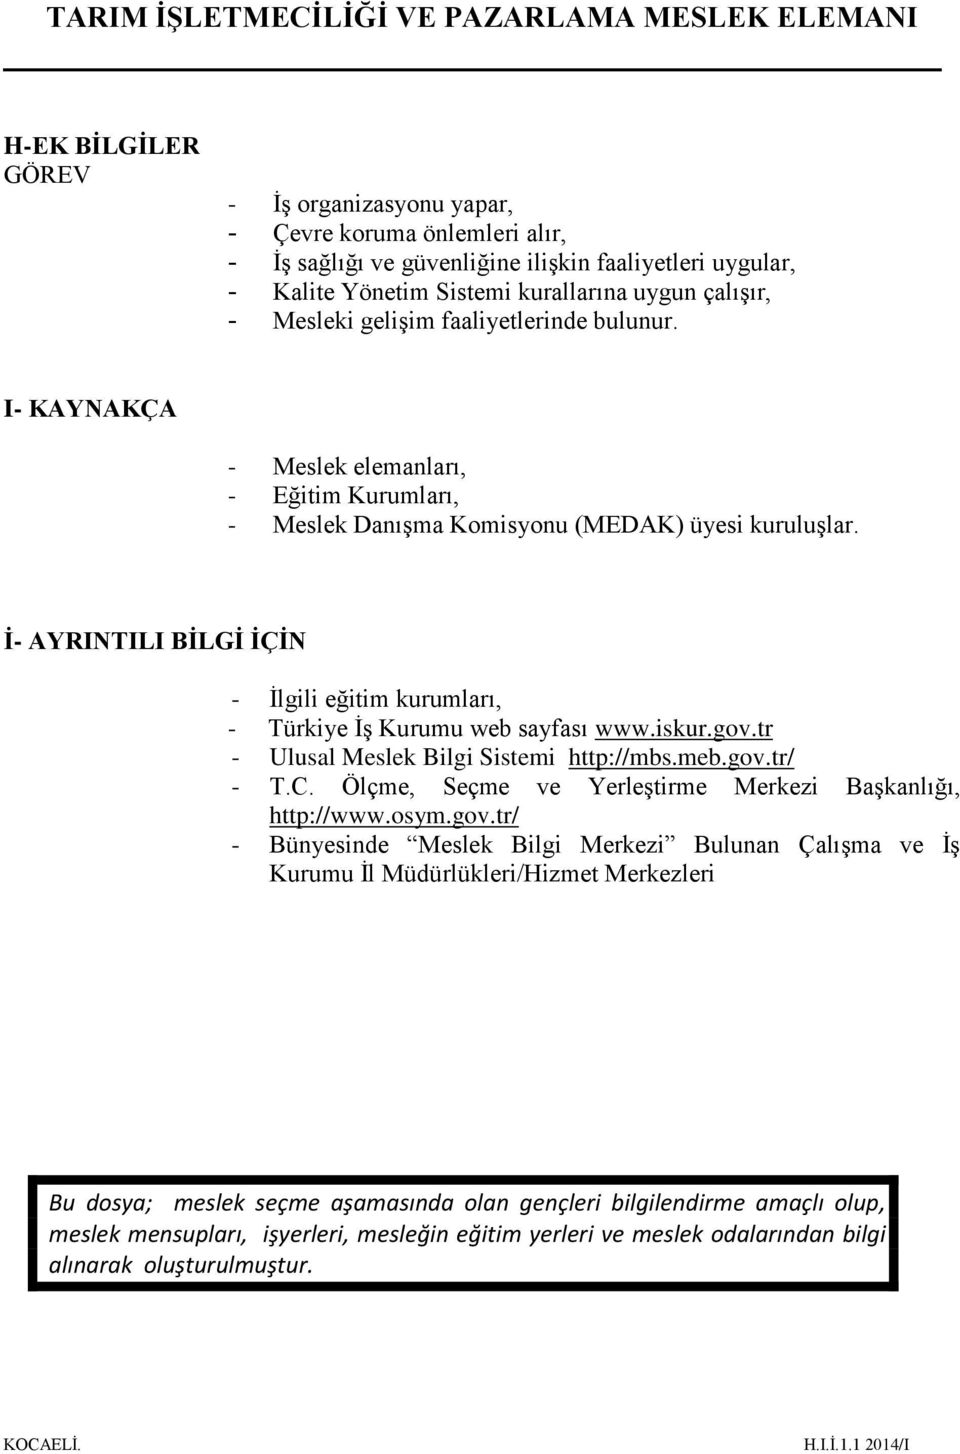 İ- AYRINTILI BİLGİ İÇİN - İlgili eğitim kurumları, - Türkiye İş Kurumu web sayfası www.iskur.gov.tr - Ulusal Meslek Bilgi Sistemi http://mbs.meb.gov.tr/ - T.C.